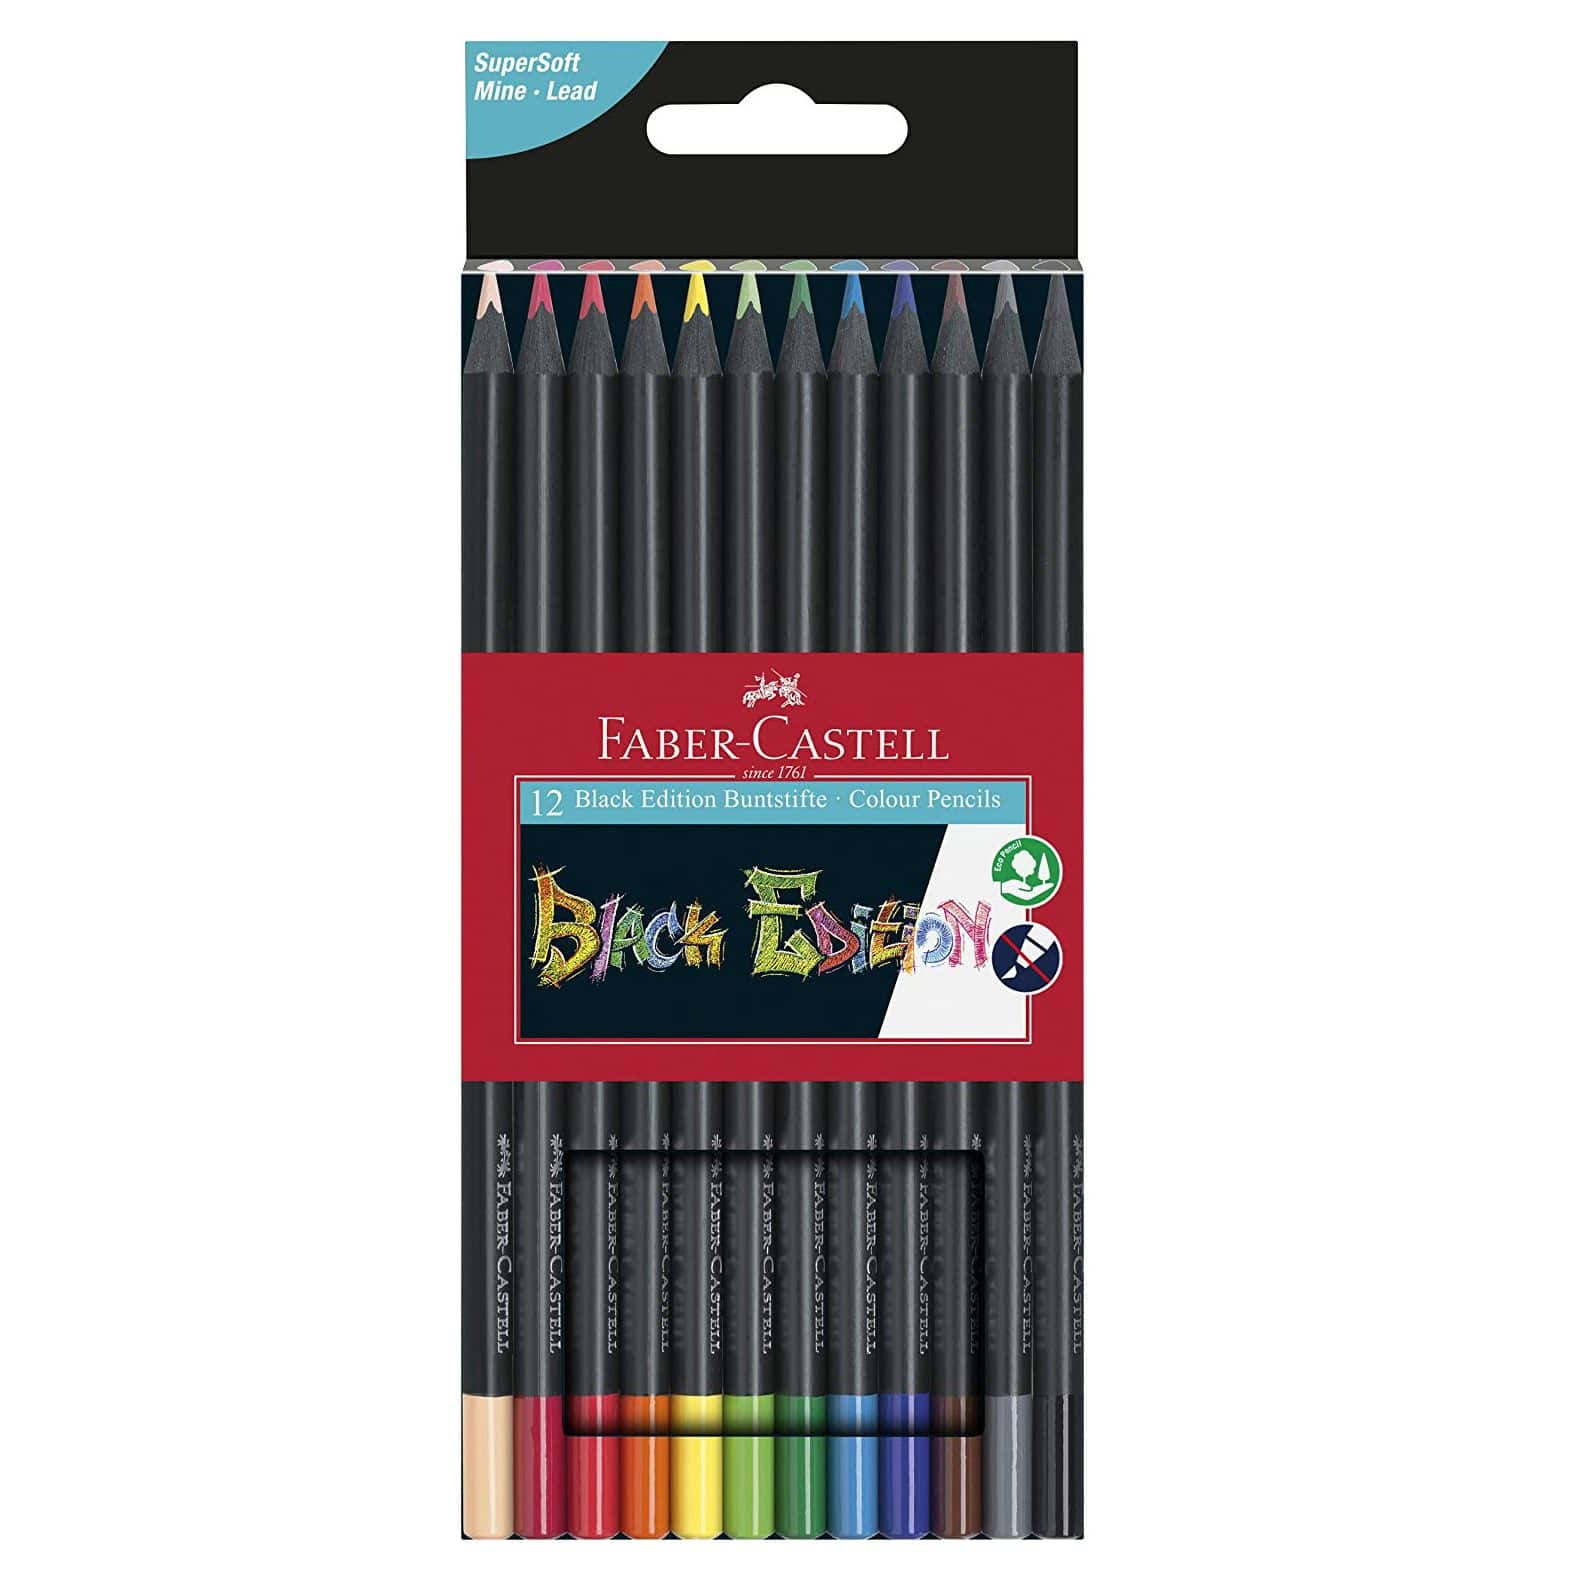 Faber Castell Black Edition Colour Pencils Set of 12